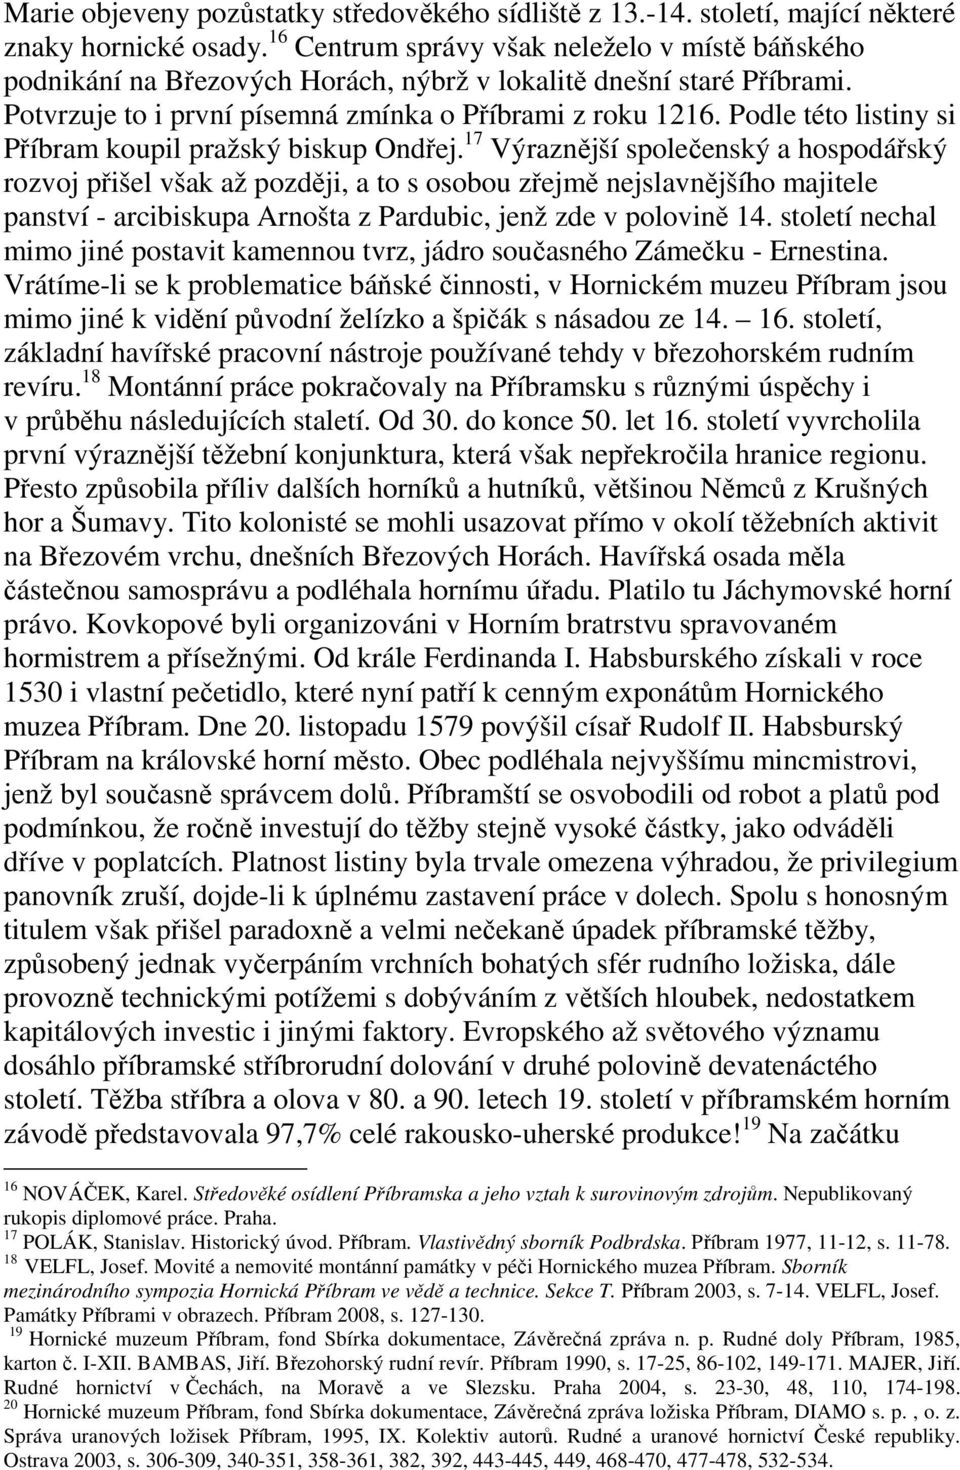 Podle této listiny si Příbram koupil pražský biskup Ondřej.